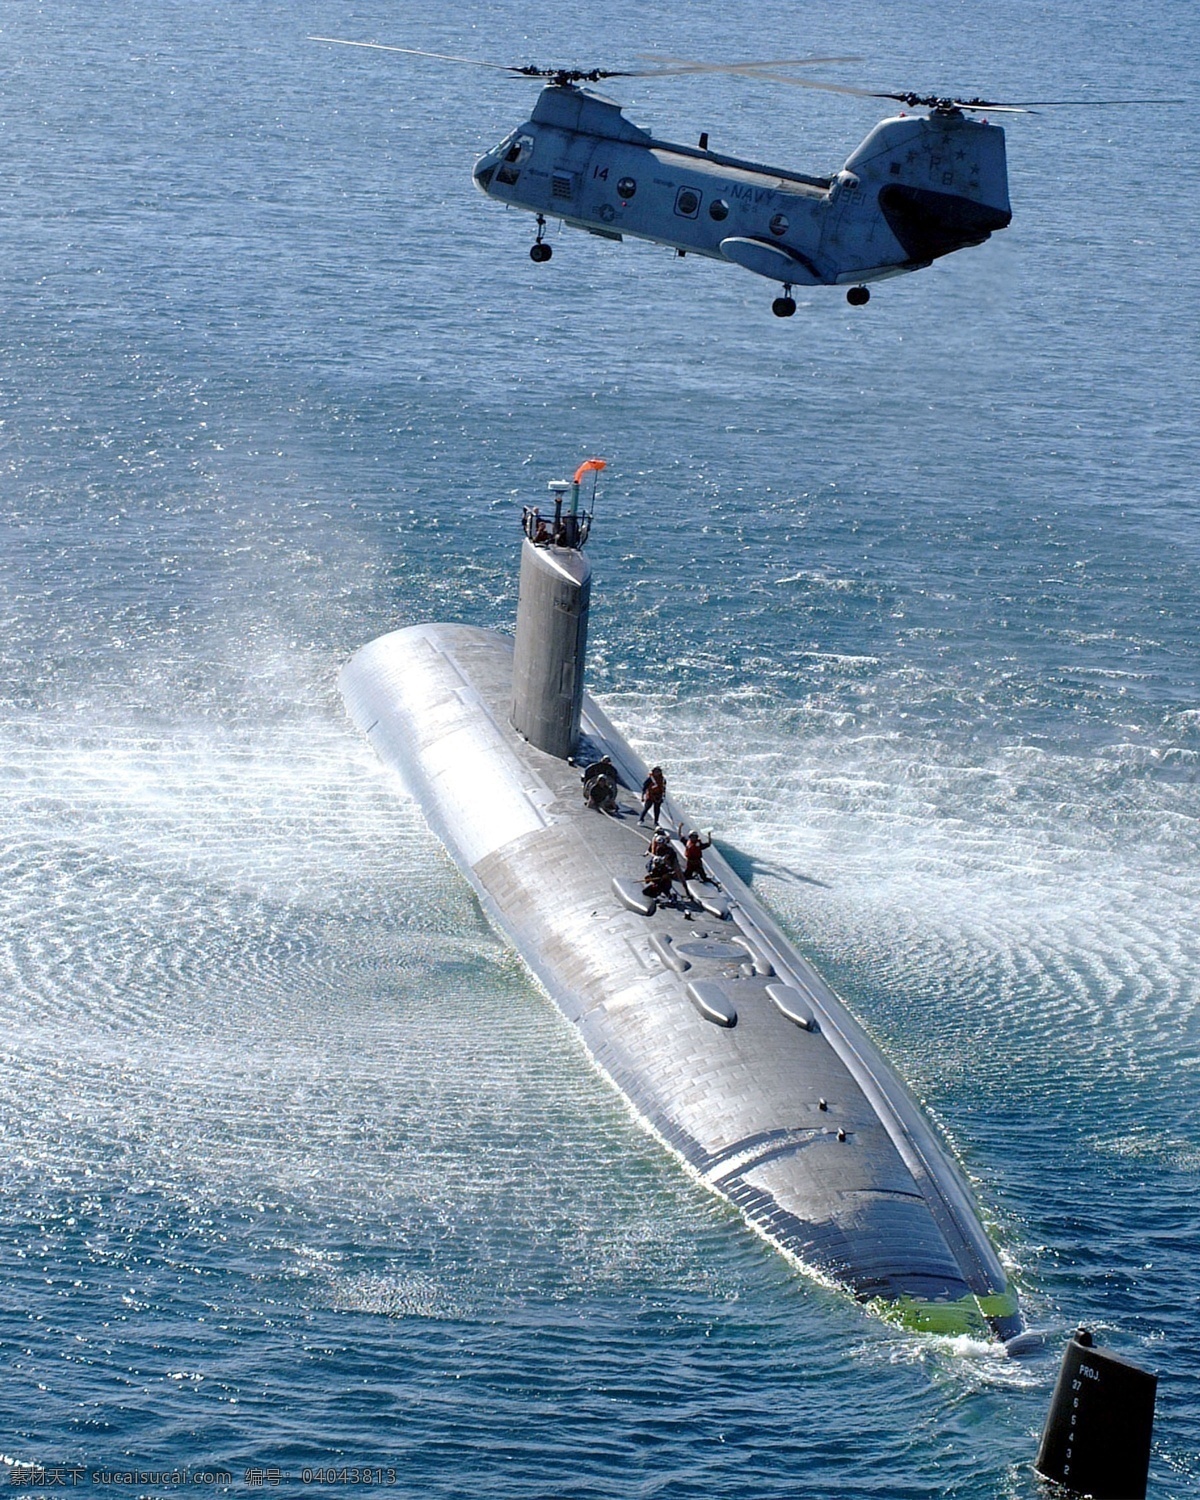 军舰 潜艇 系列 海洋 军港 舰炮射击 导弹发射 直升机 船坞 吊装 沉船与打捞 现代科技 军事武器 摄影图库 300